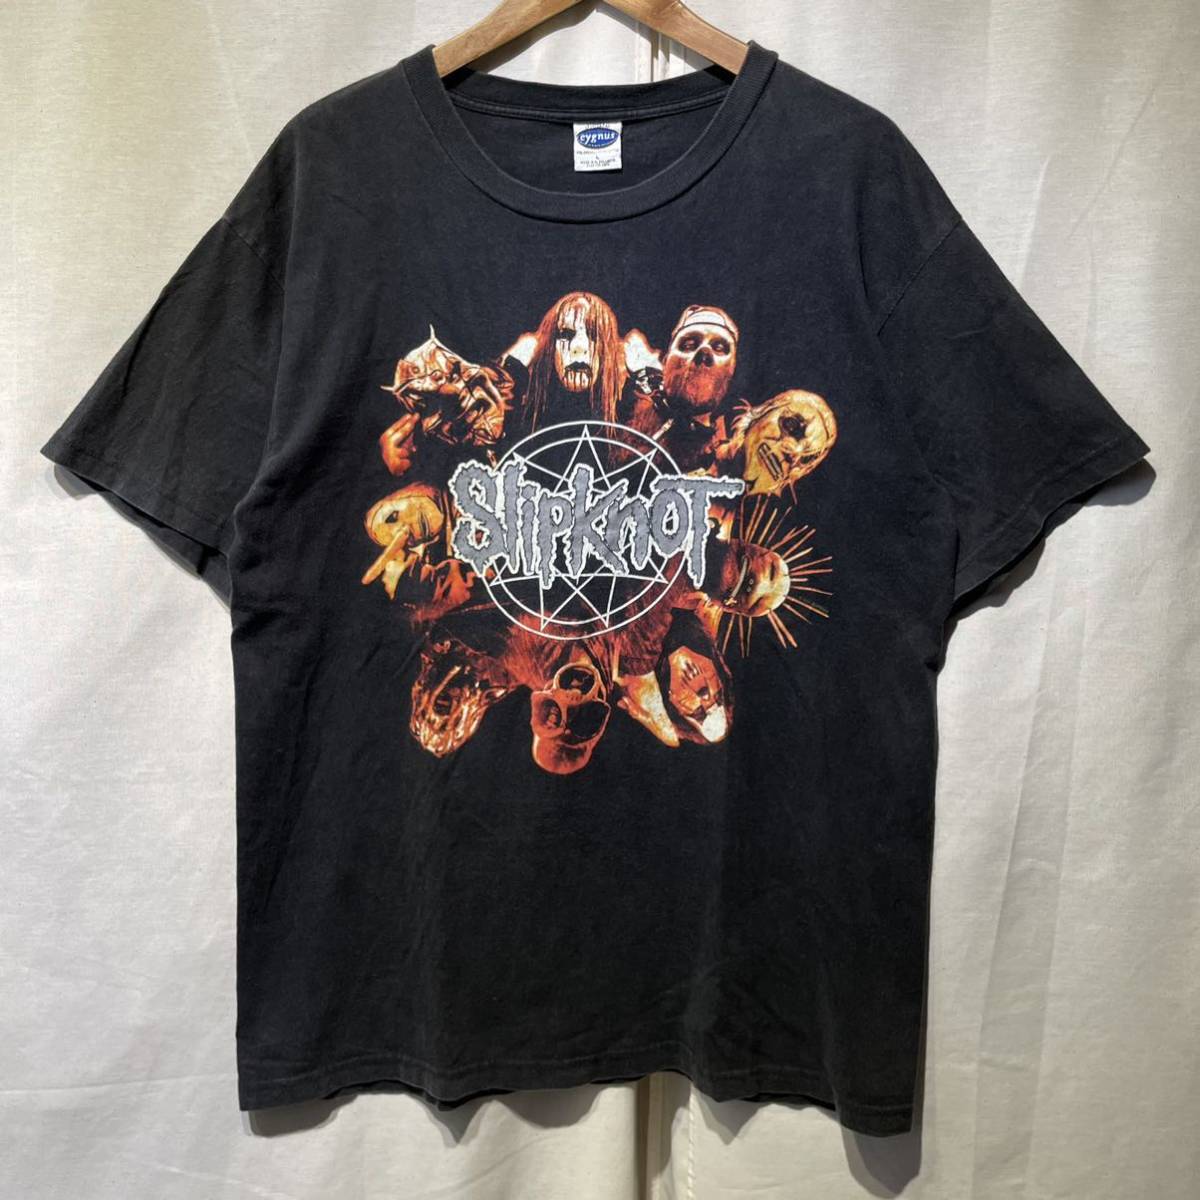 激レア】'01 Slipknot バンド Tシャツ cygnus ビンテージ / metallica